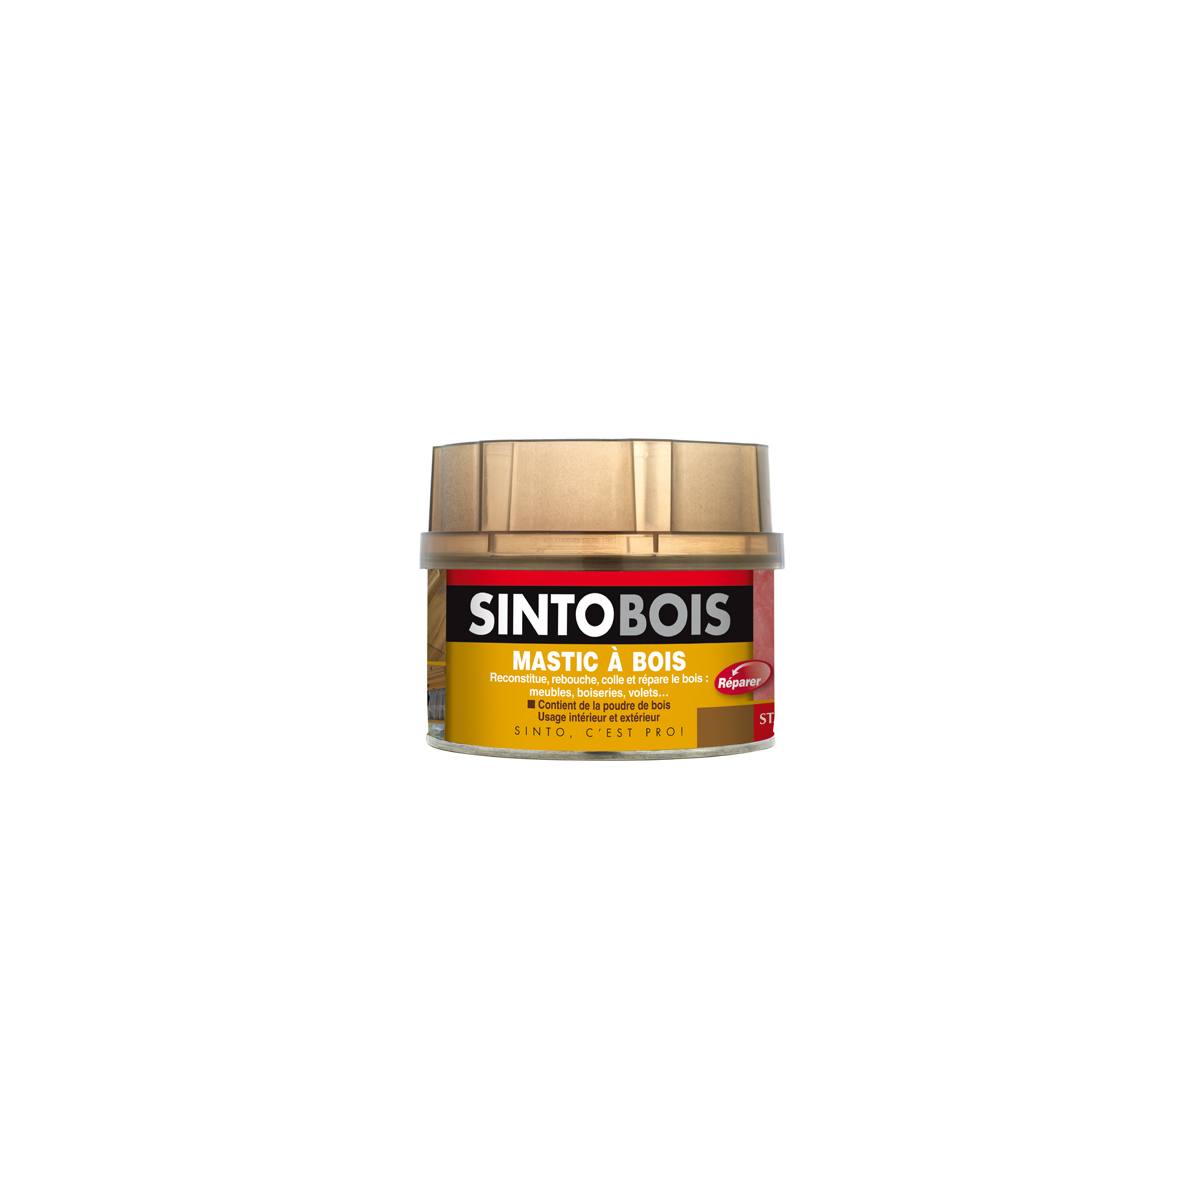 SINTOBOIS - Feutre de Retouche - Chêne Rustique Sinto Bois